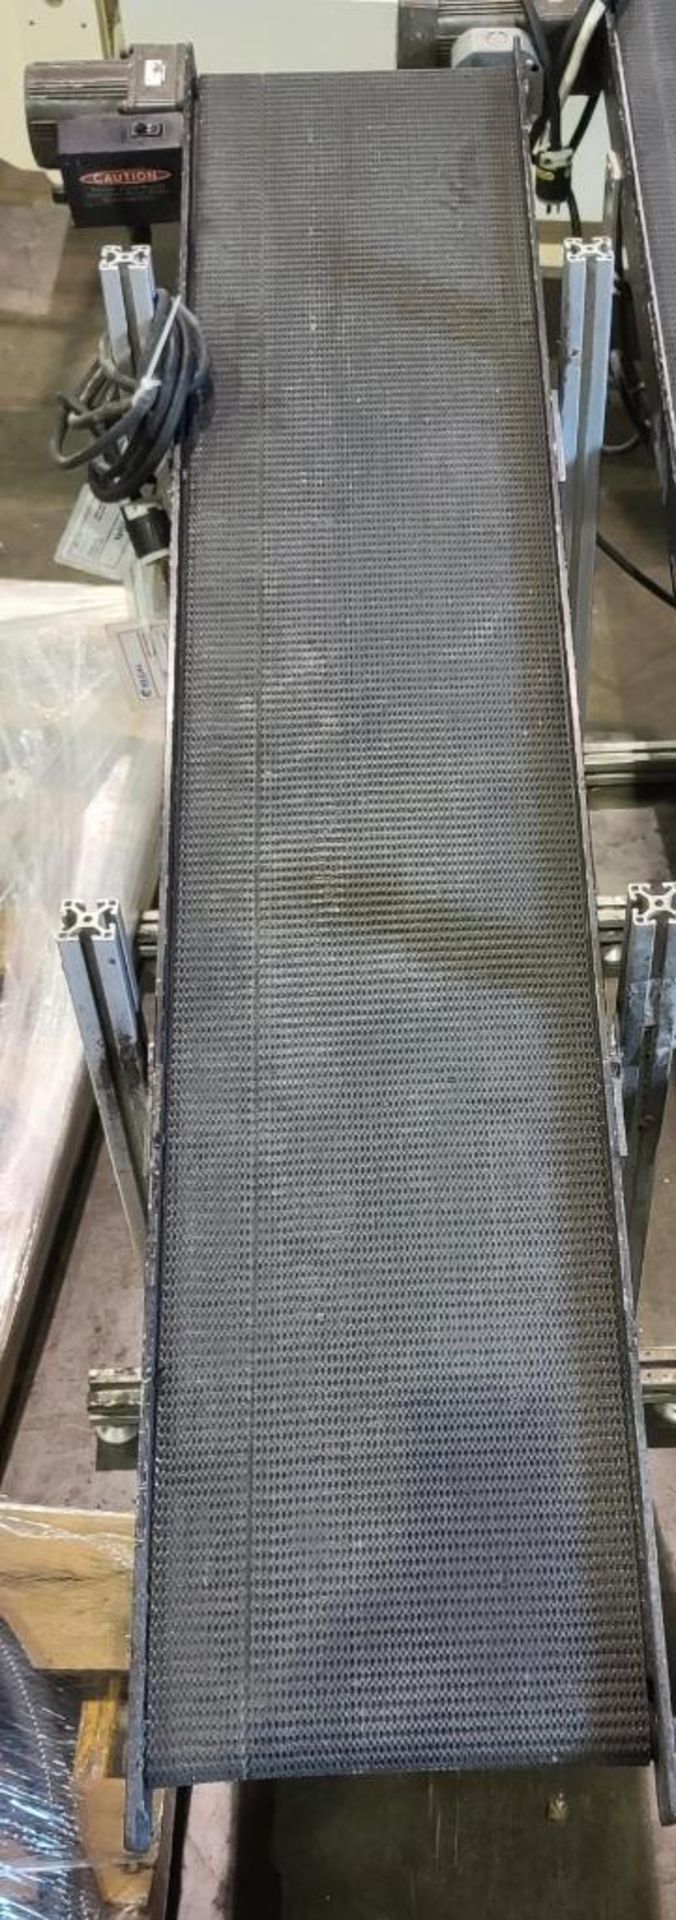 Mini Mover Conveyors Packaging Takeaway Conveyor